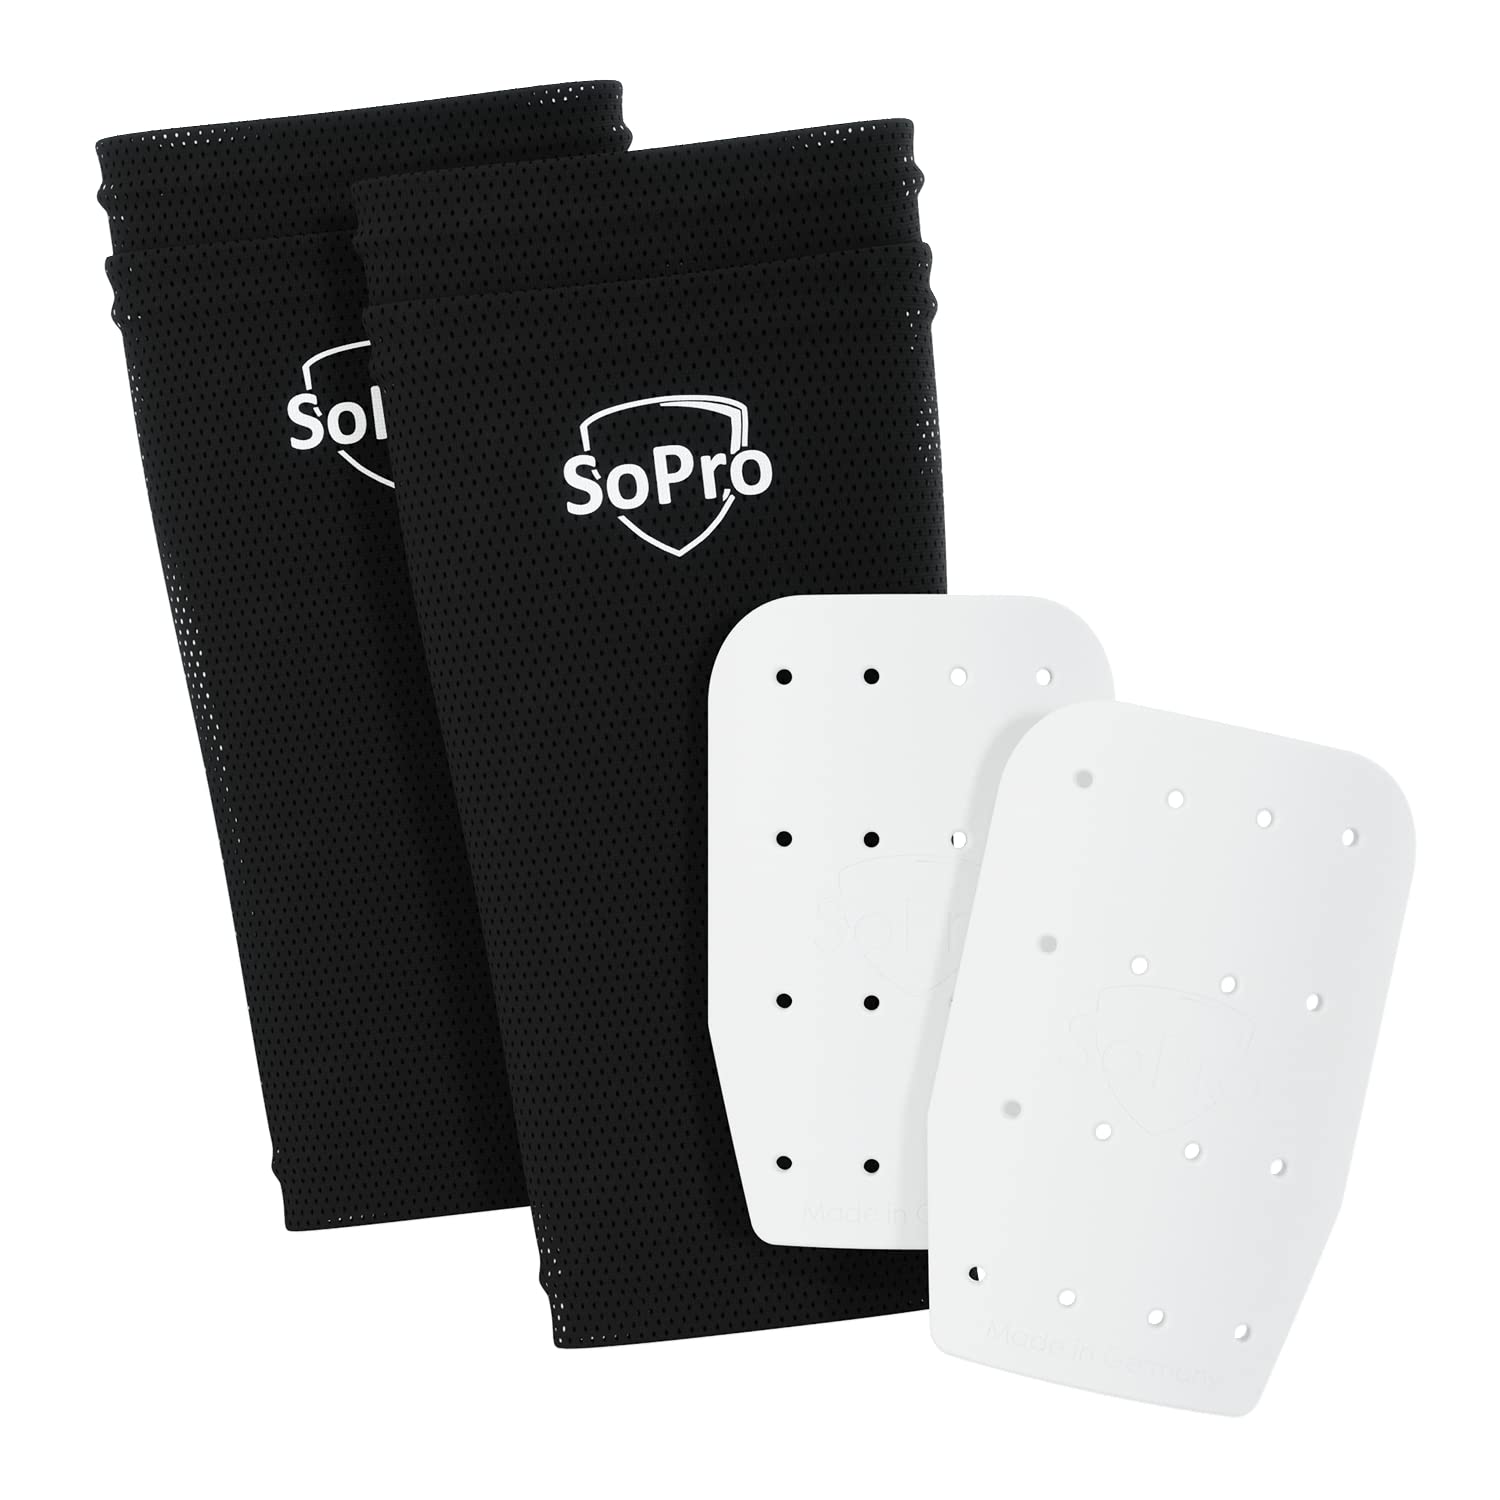 SoPro Mini Schienbeinschoner für Fußball - inklusive Socken - 120 x 80 x 5 mm - Für Kinder & Erwachsene - leicht, klein, rutschfest & geruchsneutral - Made in Germany